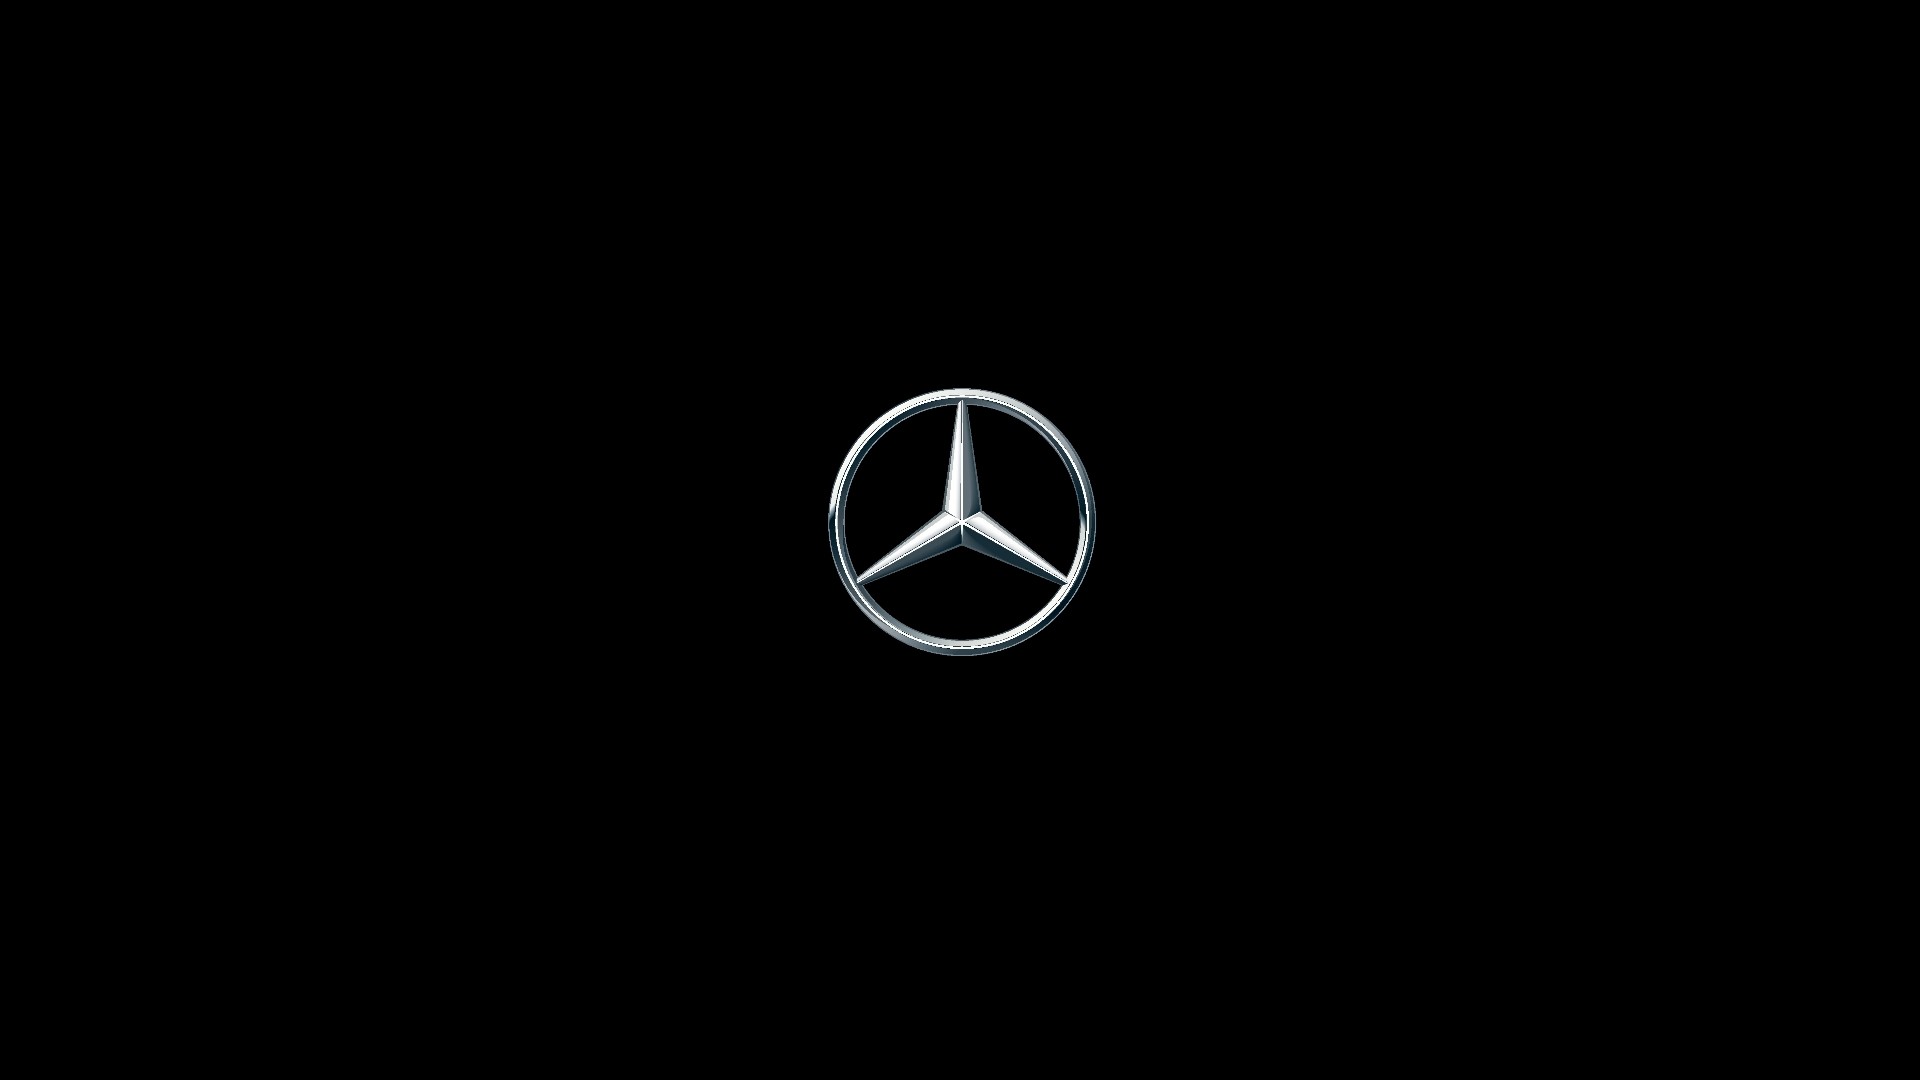 1920x1080 Mercedes car logo hd wallpapers